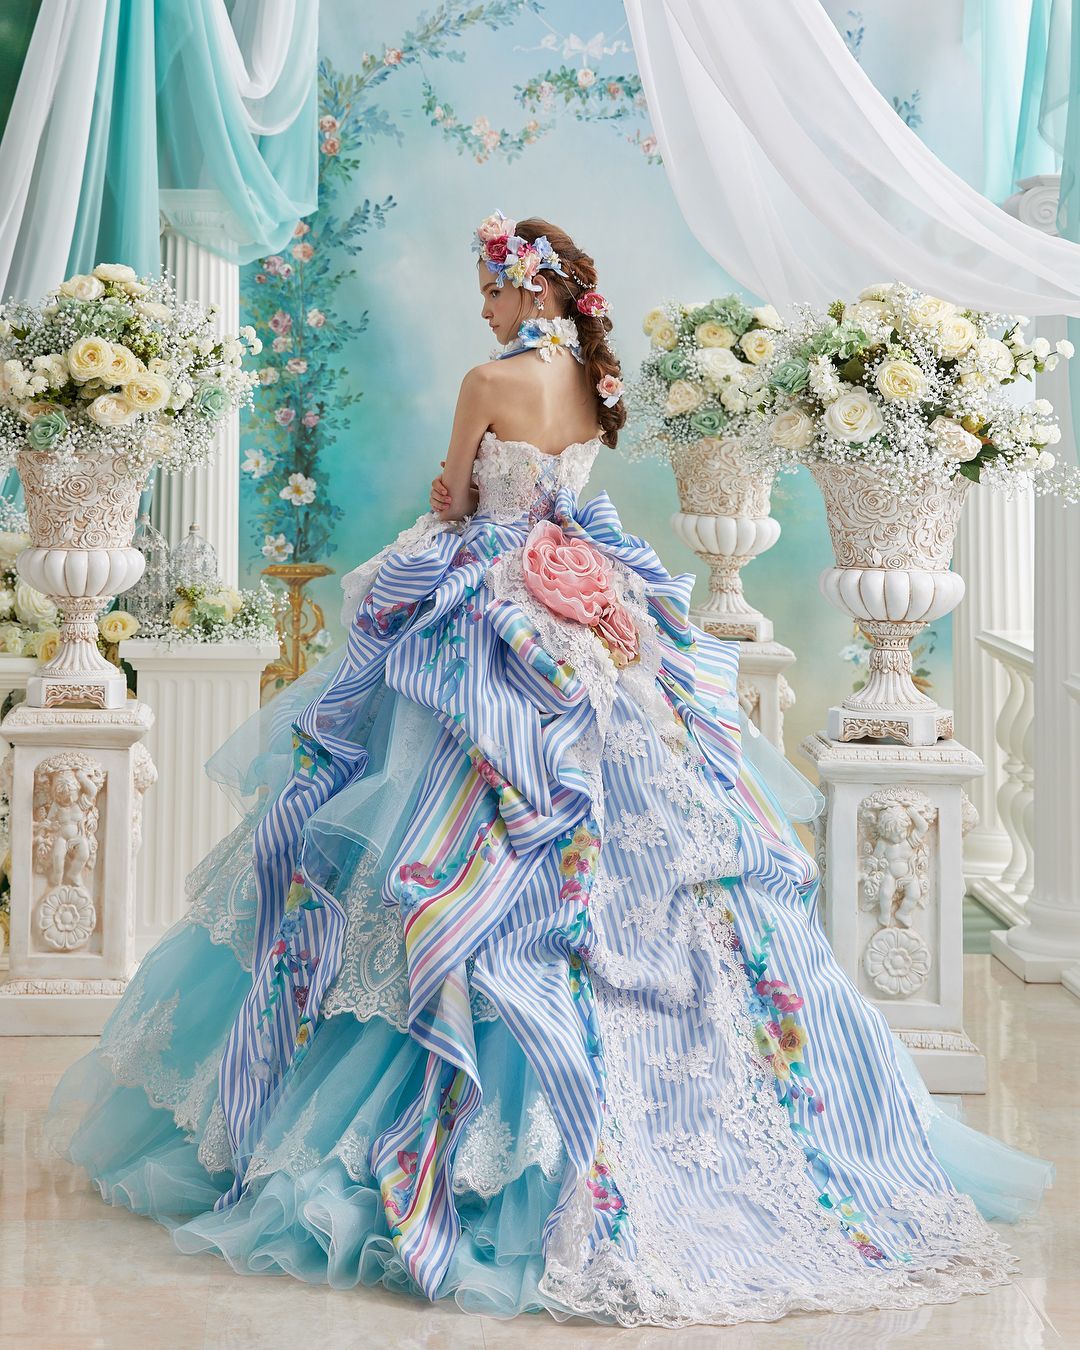 日本婚纱品牌Stella de libero 的嫁衣 唯美的花之嫁纱